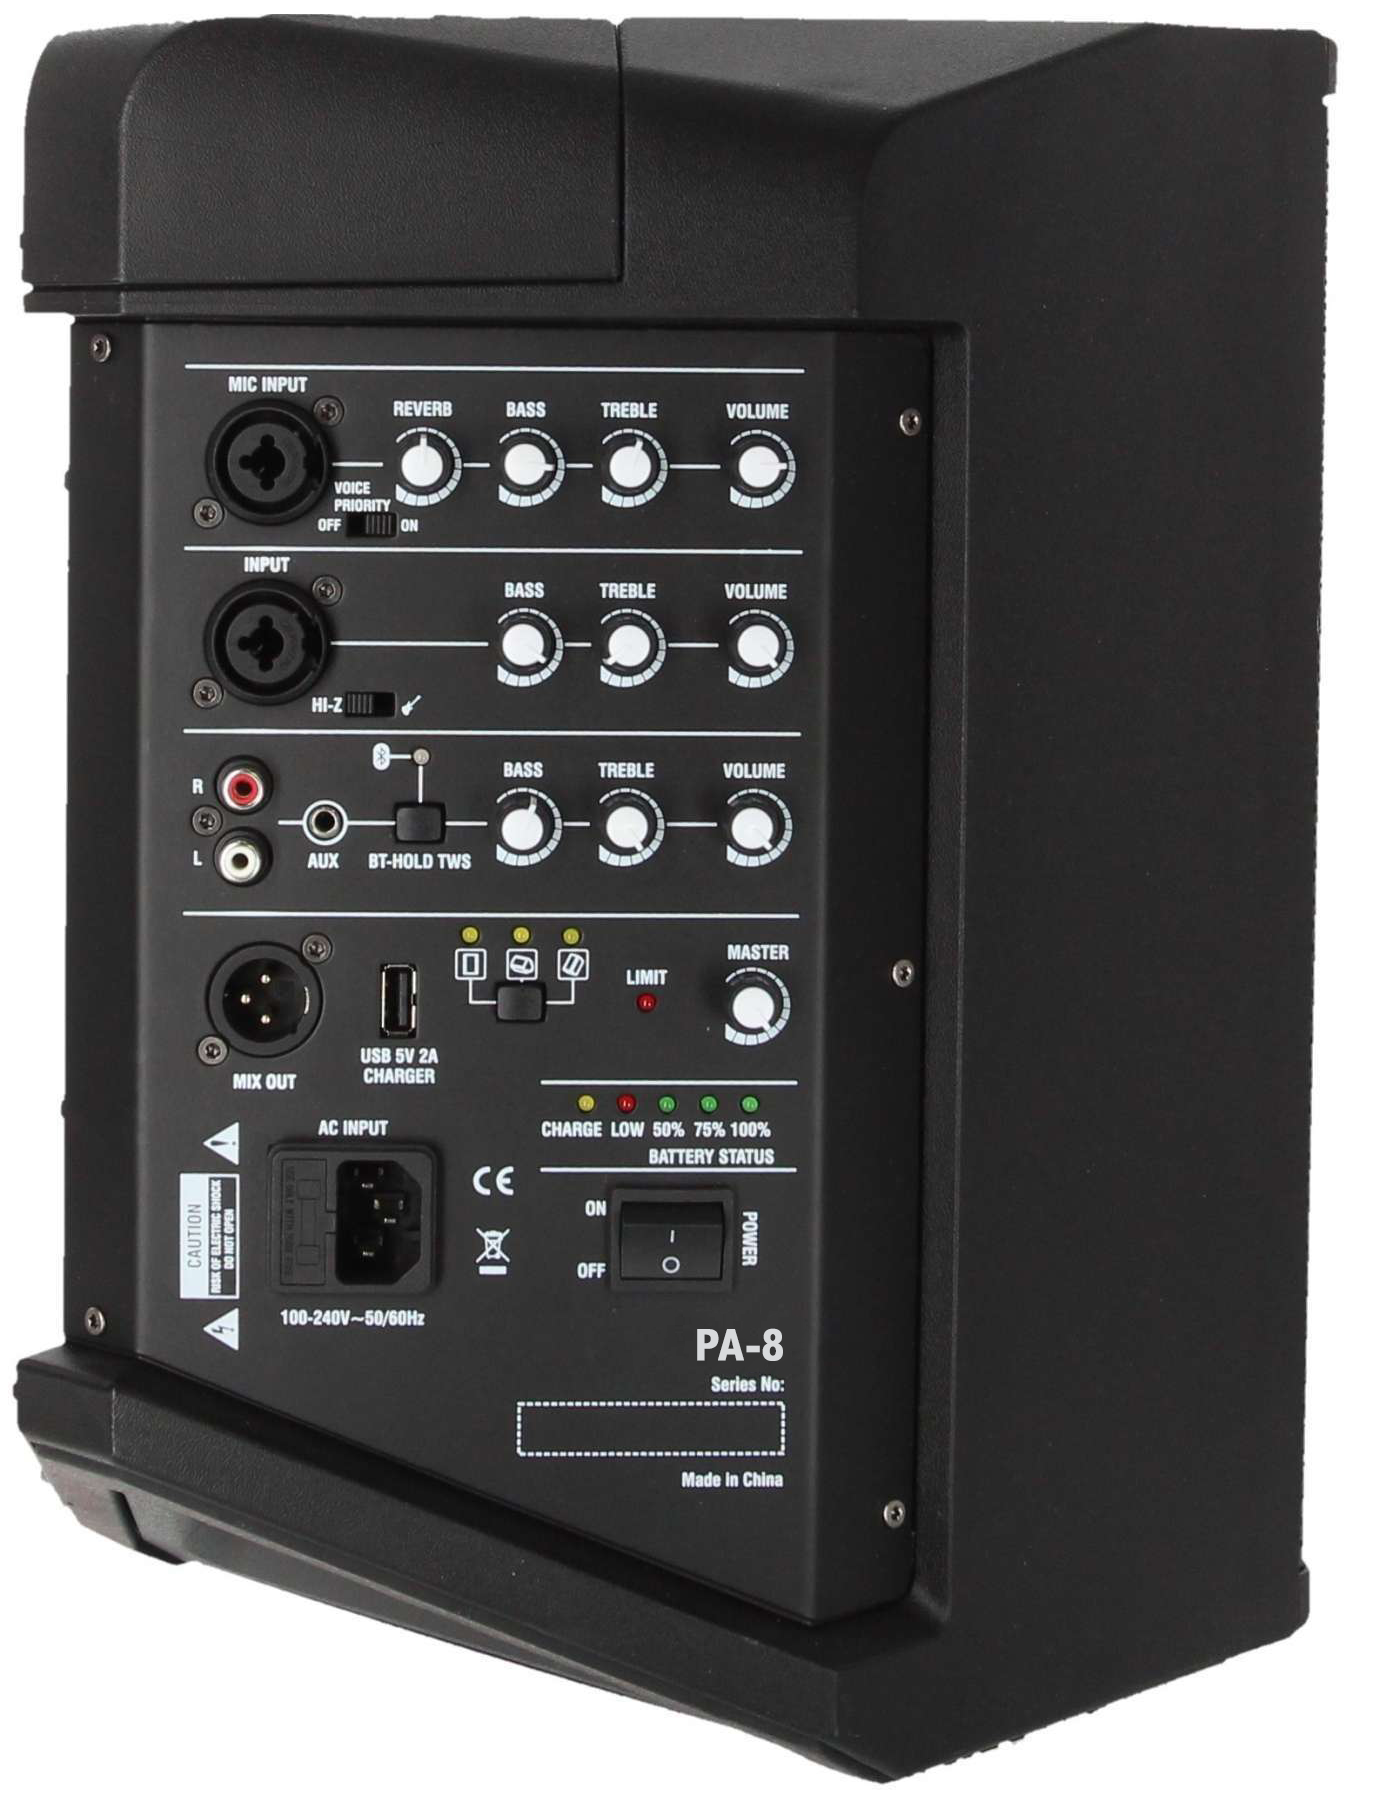 Definitive Audio Atlantis Pa-8 - Sistema de sonorización portátil - Variation 1